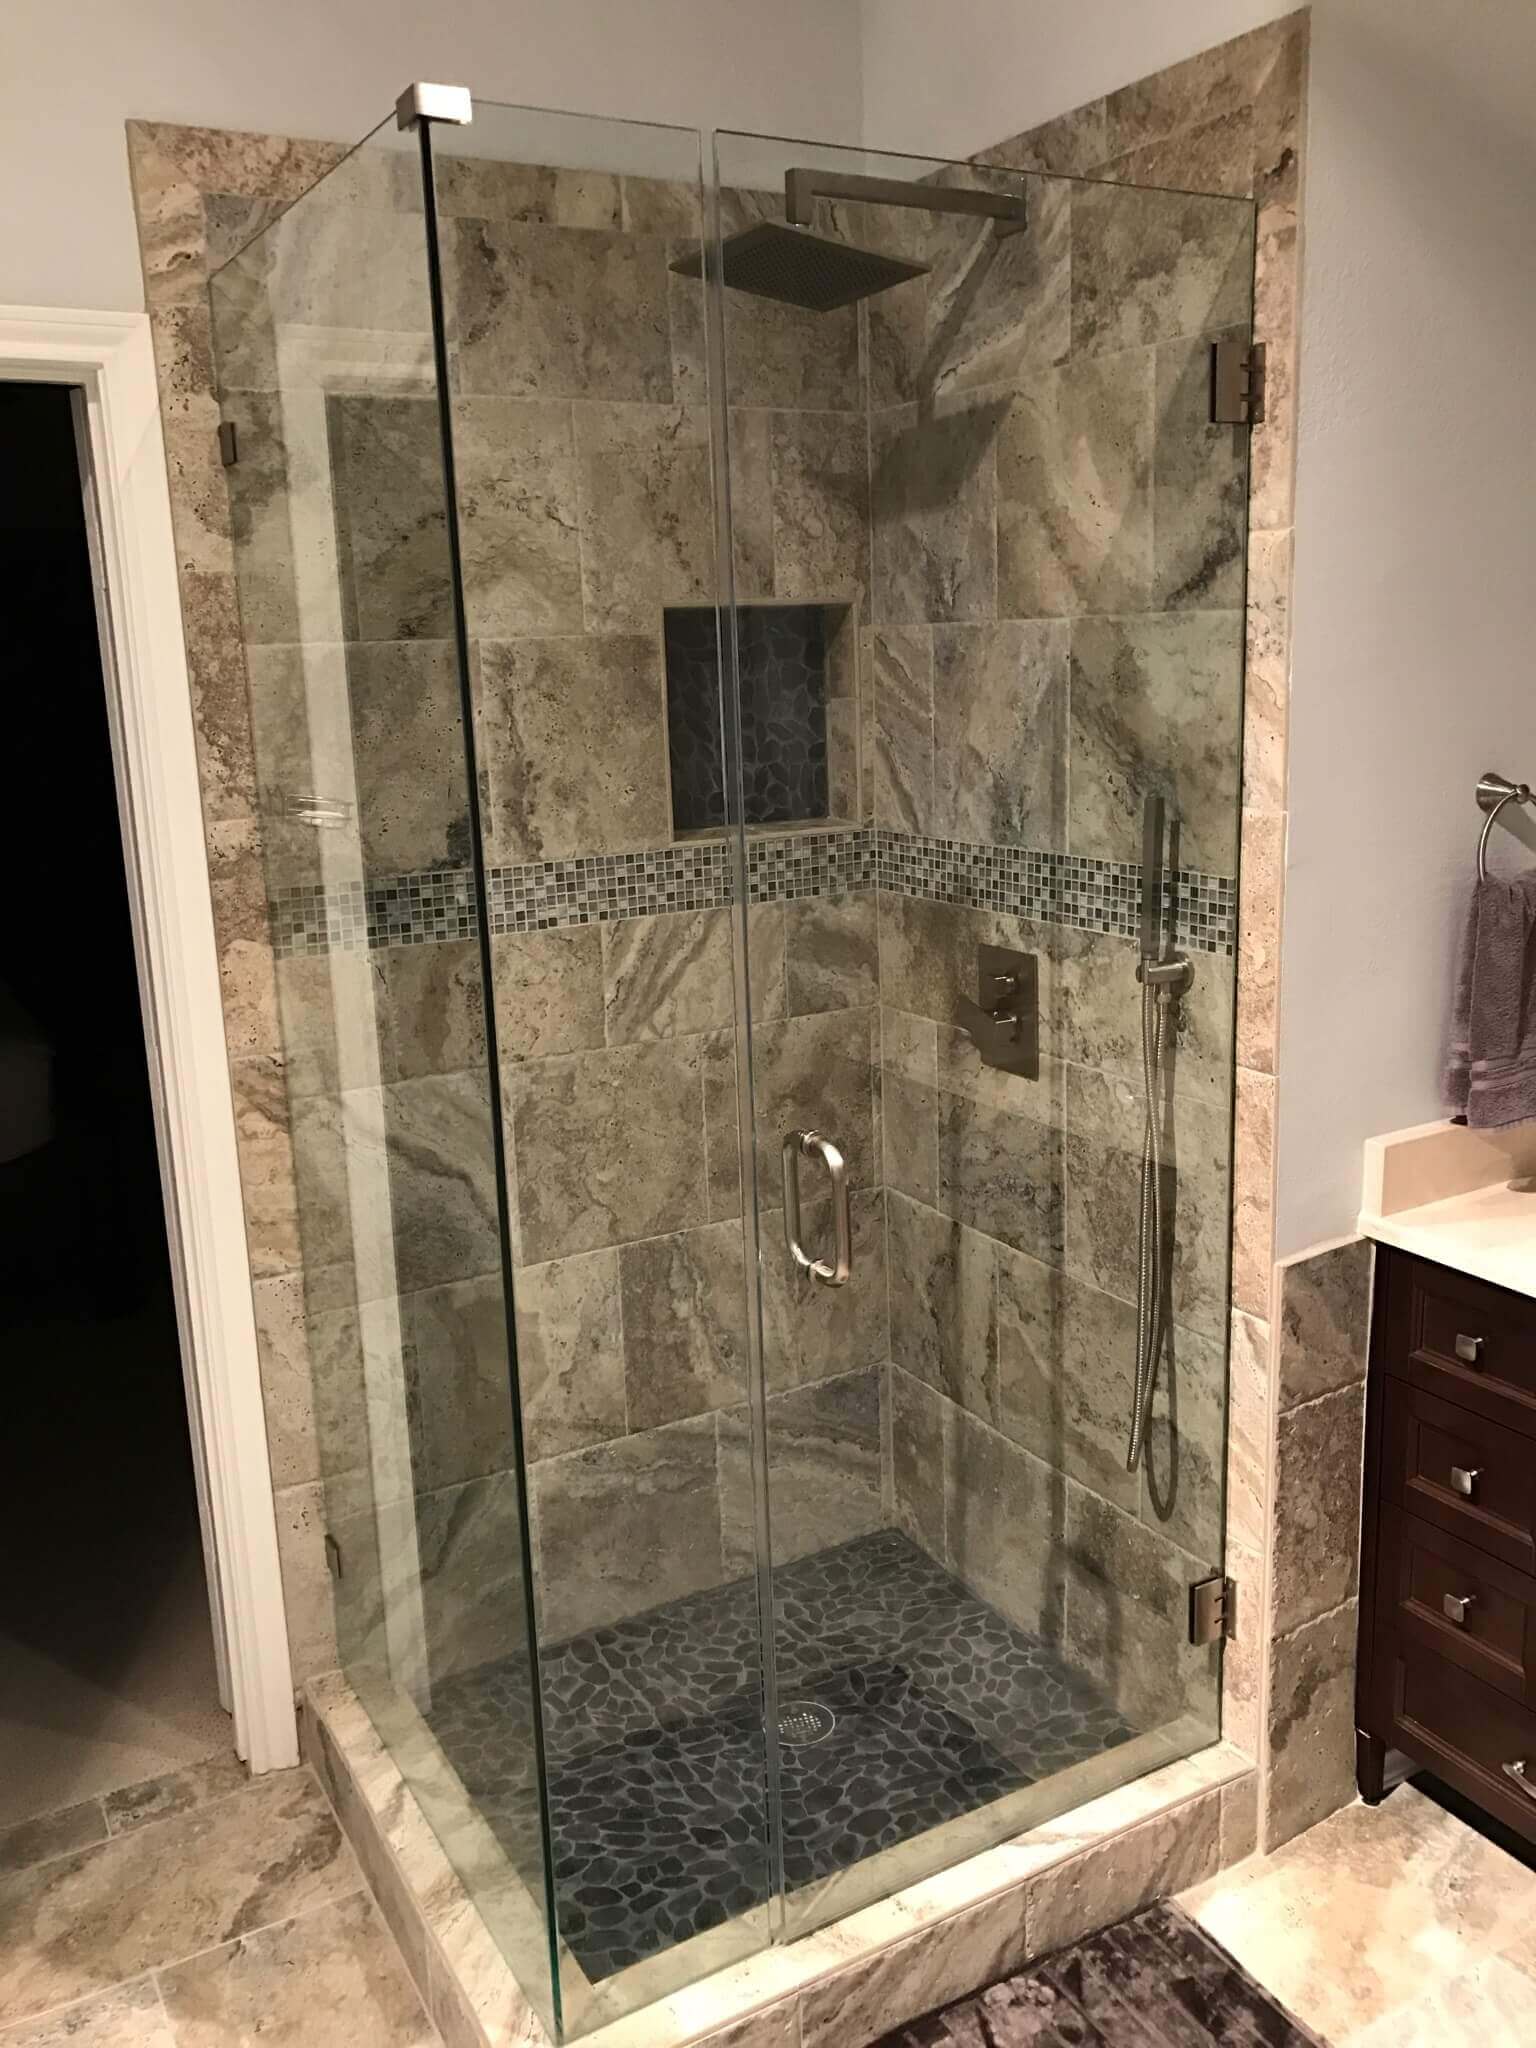 Best Tile For Shower Floor Walls, How To Lay Tile In Bathroom Shower Floor